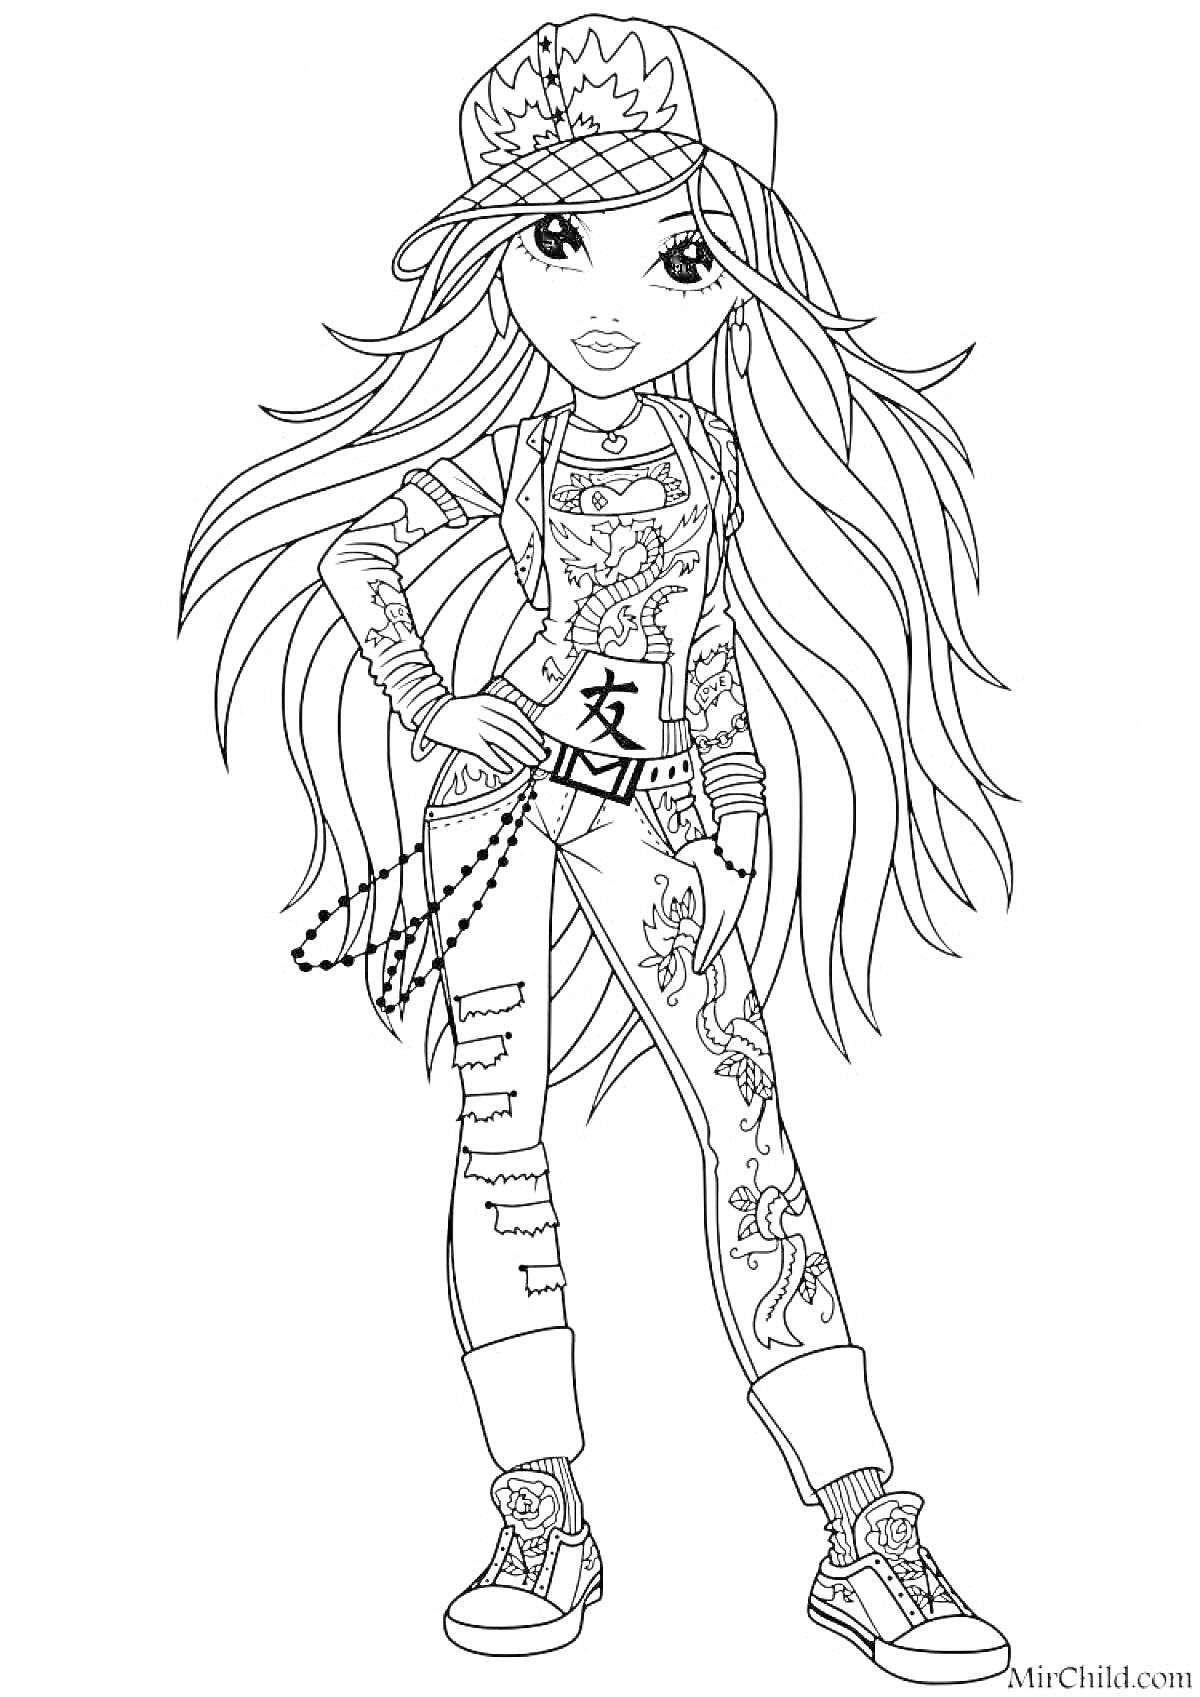 Раскраска Девочка в кепке и джинсах с драконами, с длинными волосами, в спортивной обуви и с рисунком на майке